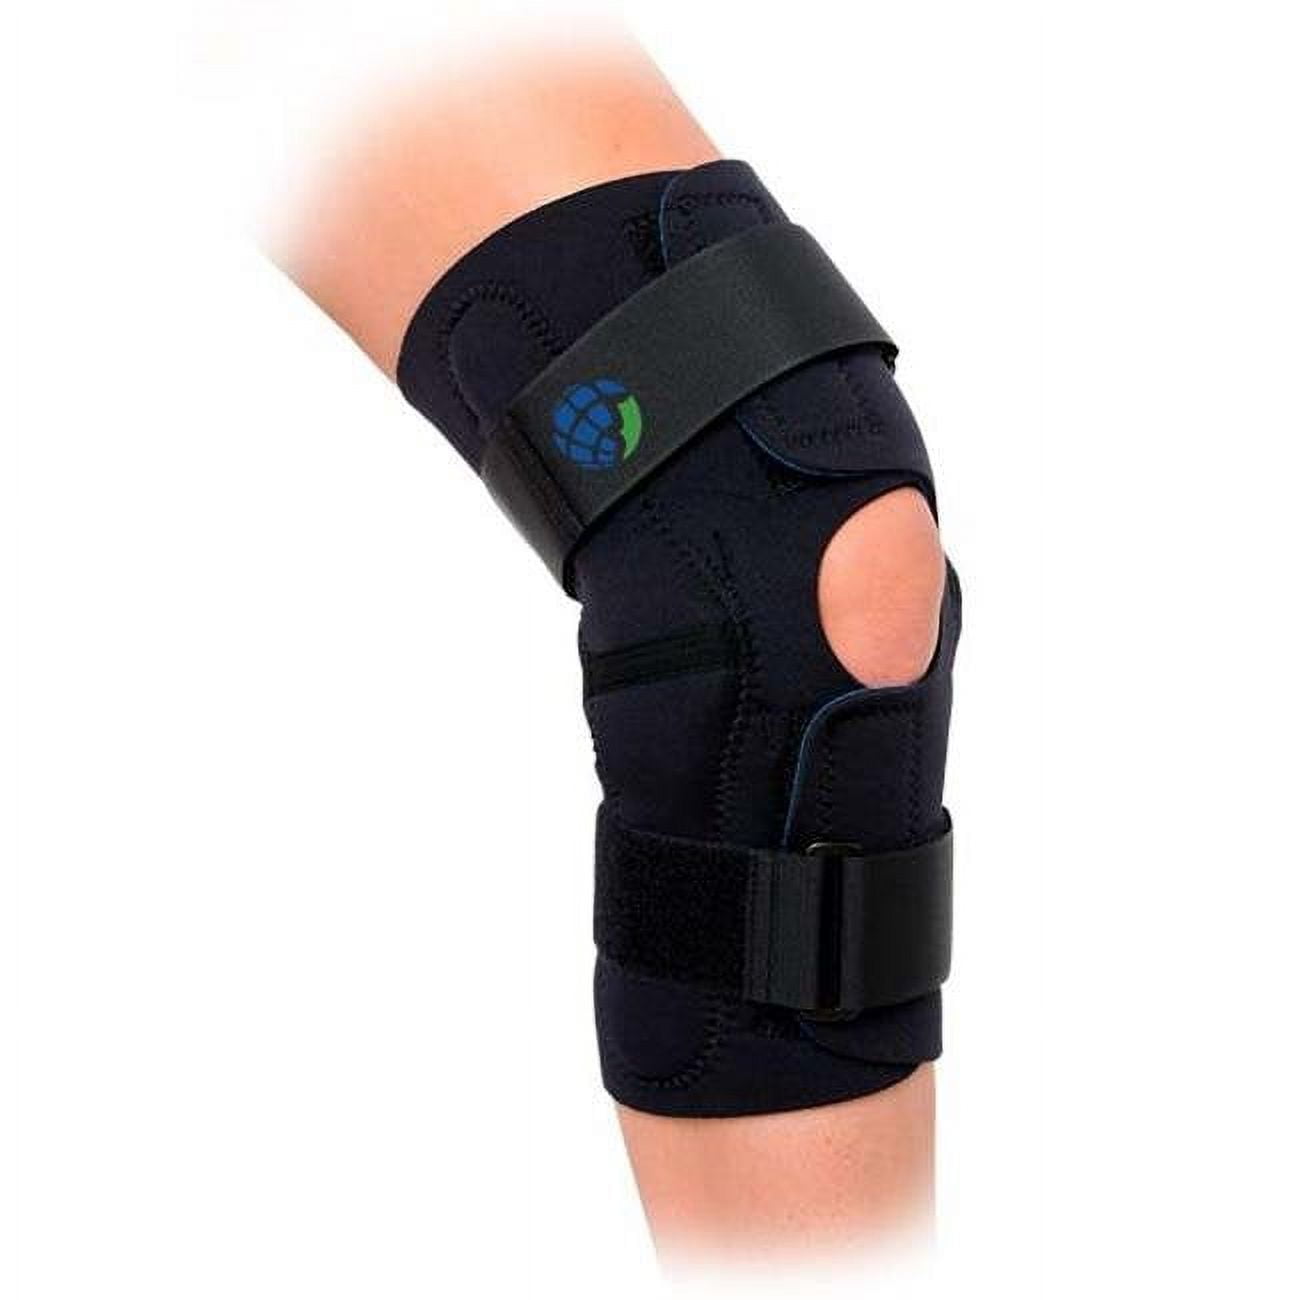 Advanced Orthopaedics 607 Wrap - Around Hinged Knee Brace